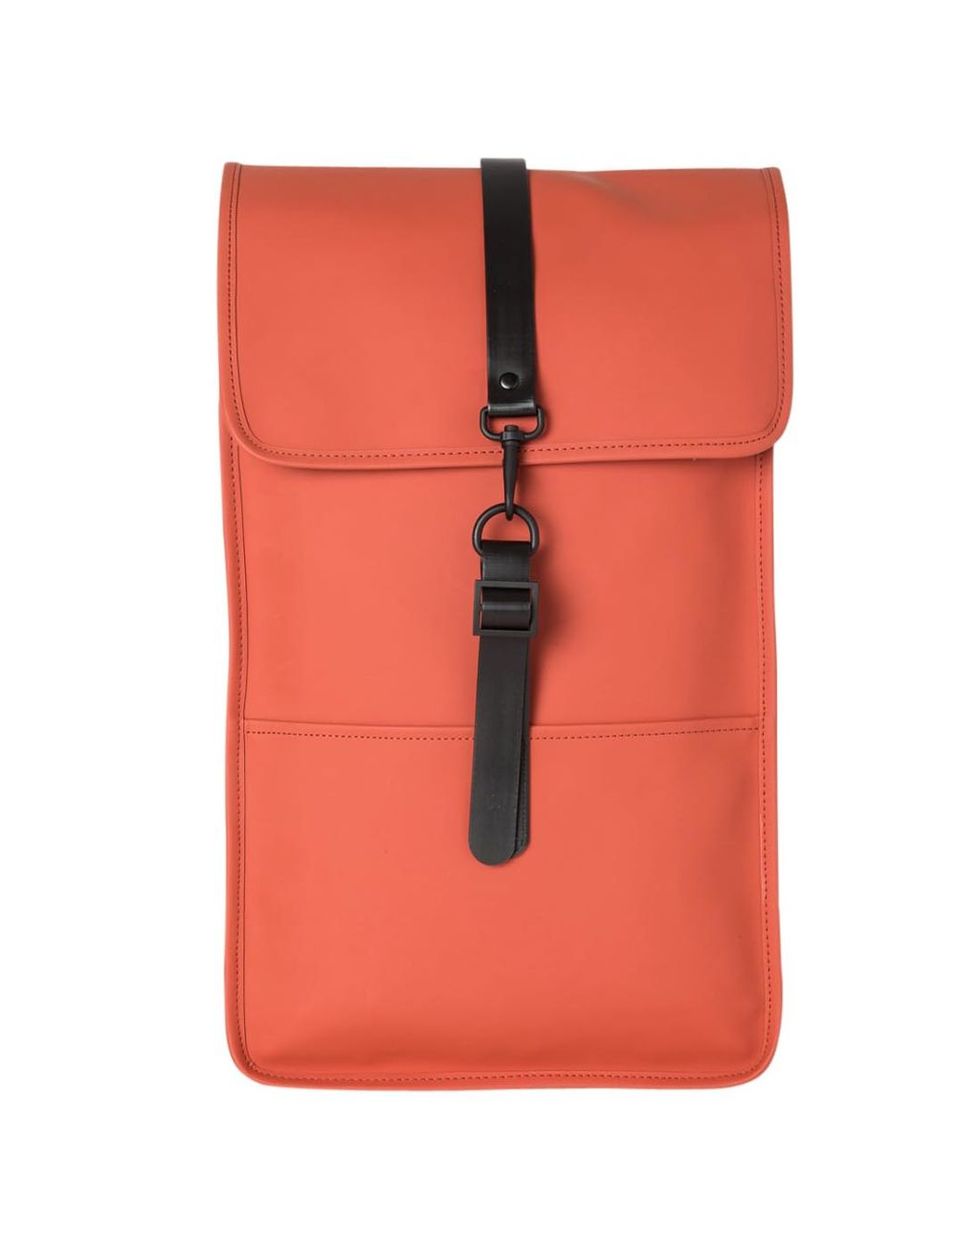 Orange, Bag, Red, Leather, Handbag, Fashion accessory, Wallet, Material property, Messenger bag, Strap, 